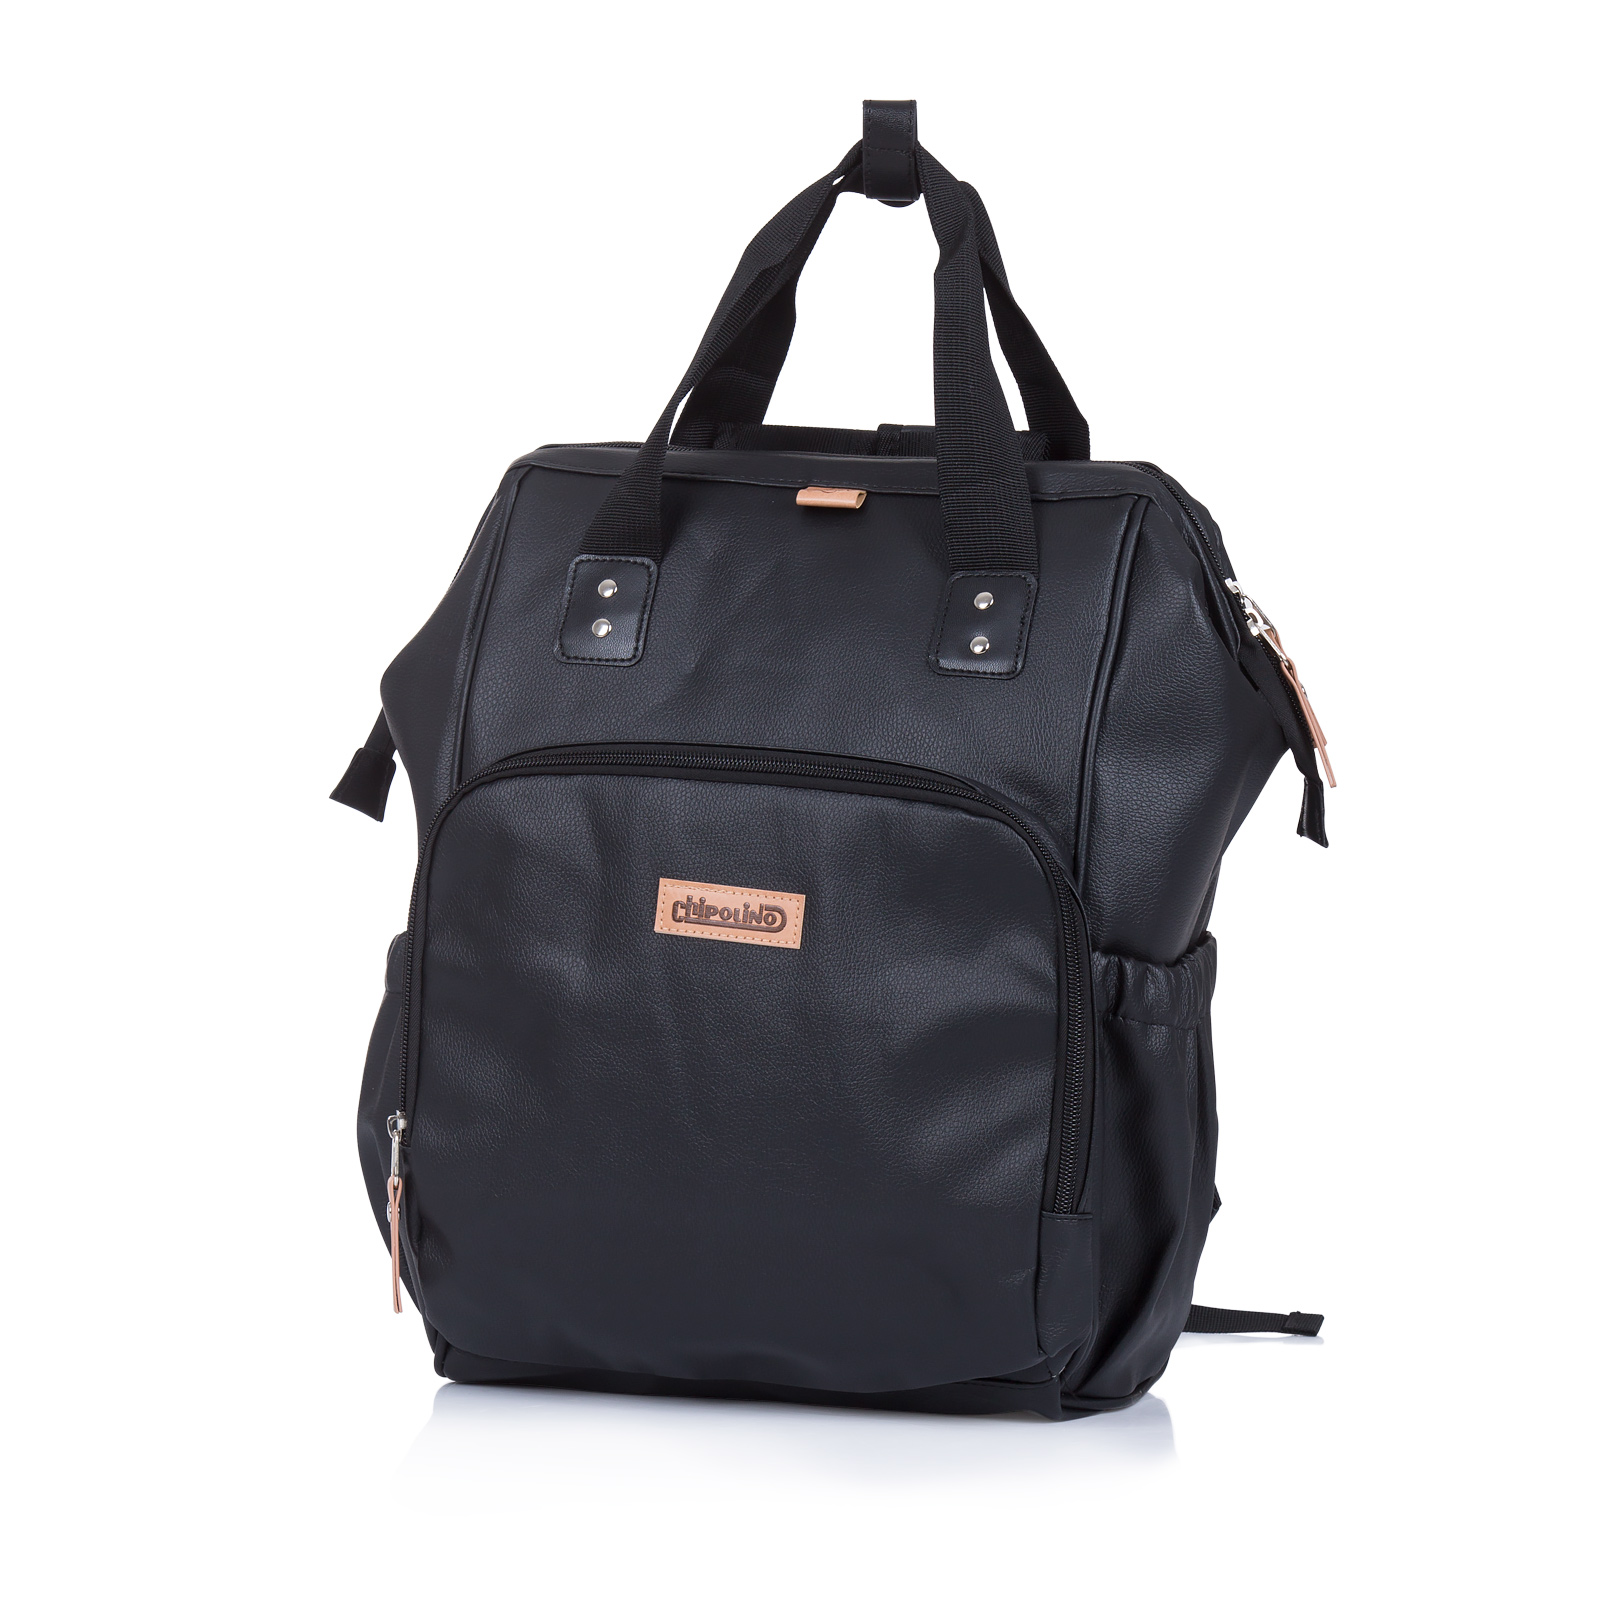 Backpack/ Diaper bag for stroller Black Leather